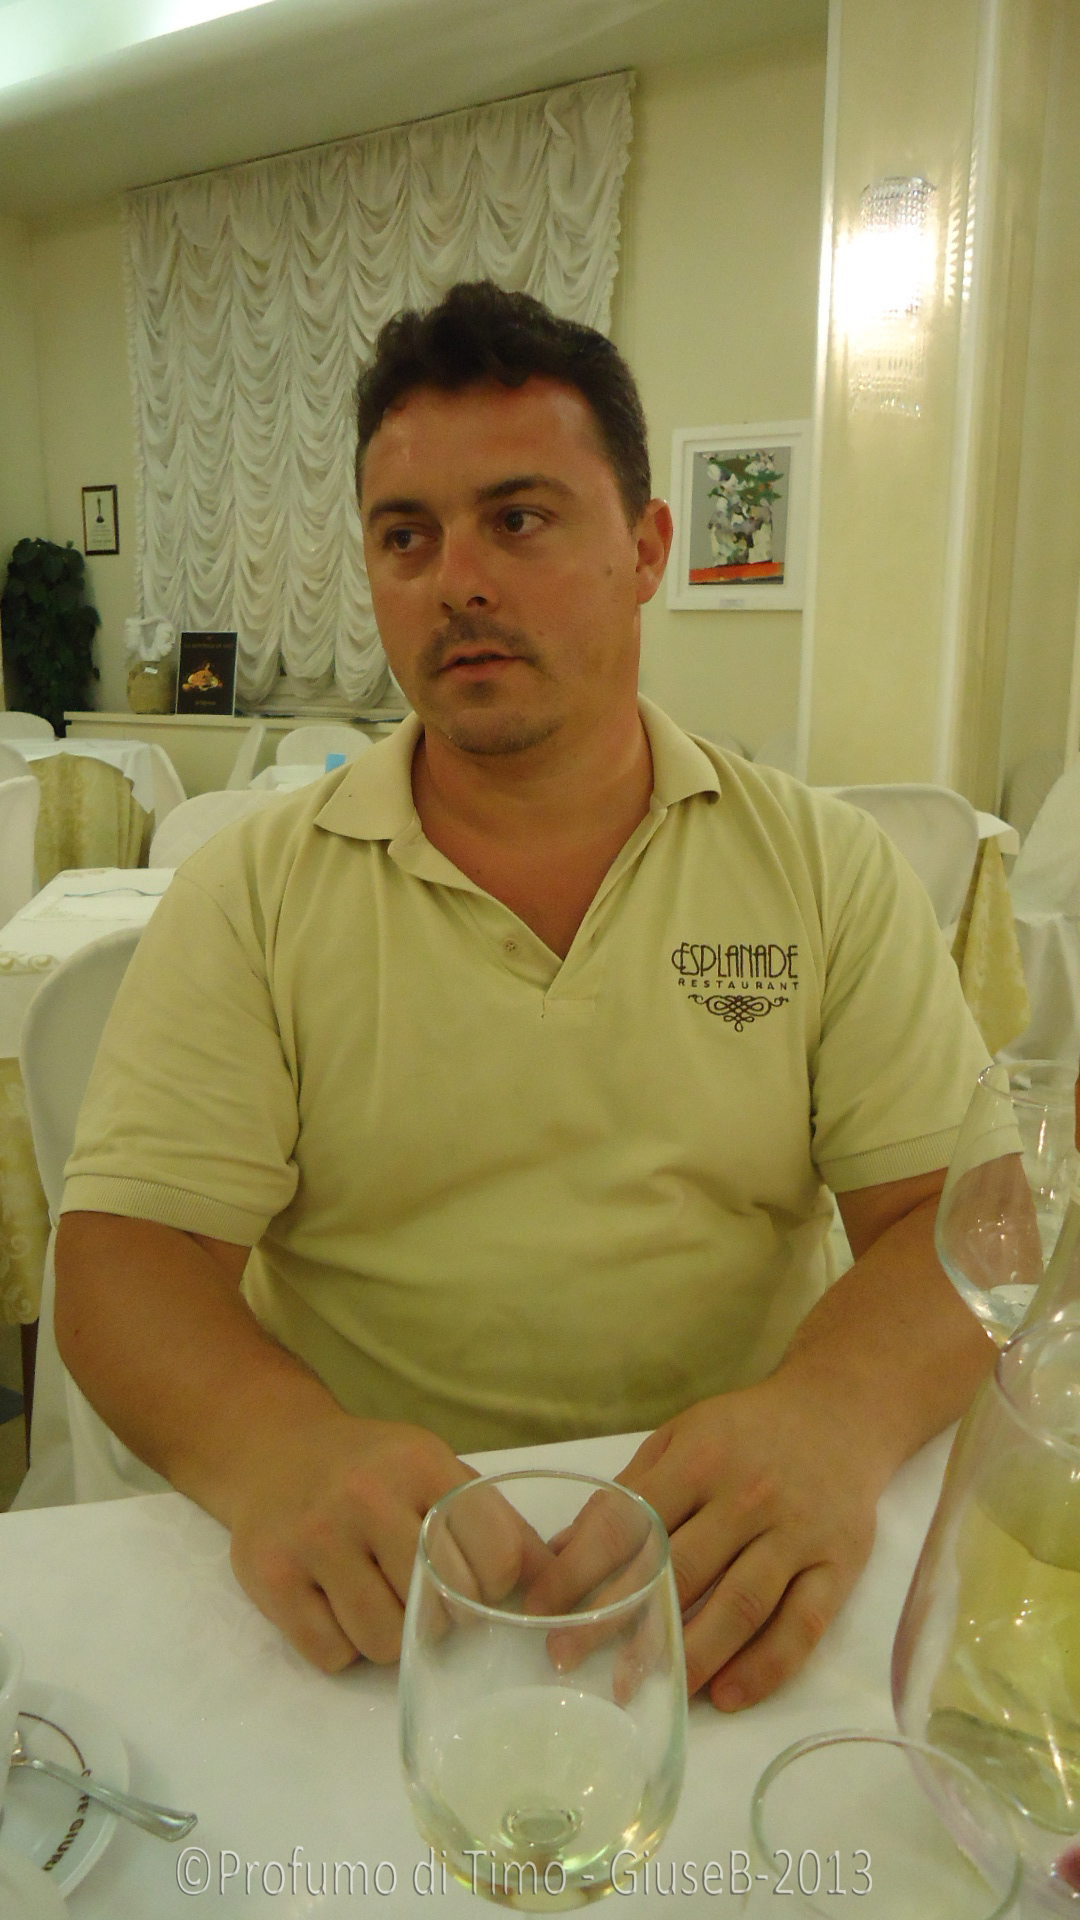 Antonio Morelli, Chef del Ristorante Esplanade e Segretario generale dell' Unione Regionale Cuochi Toscani